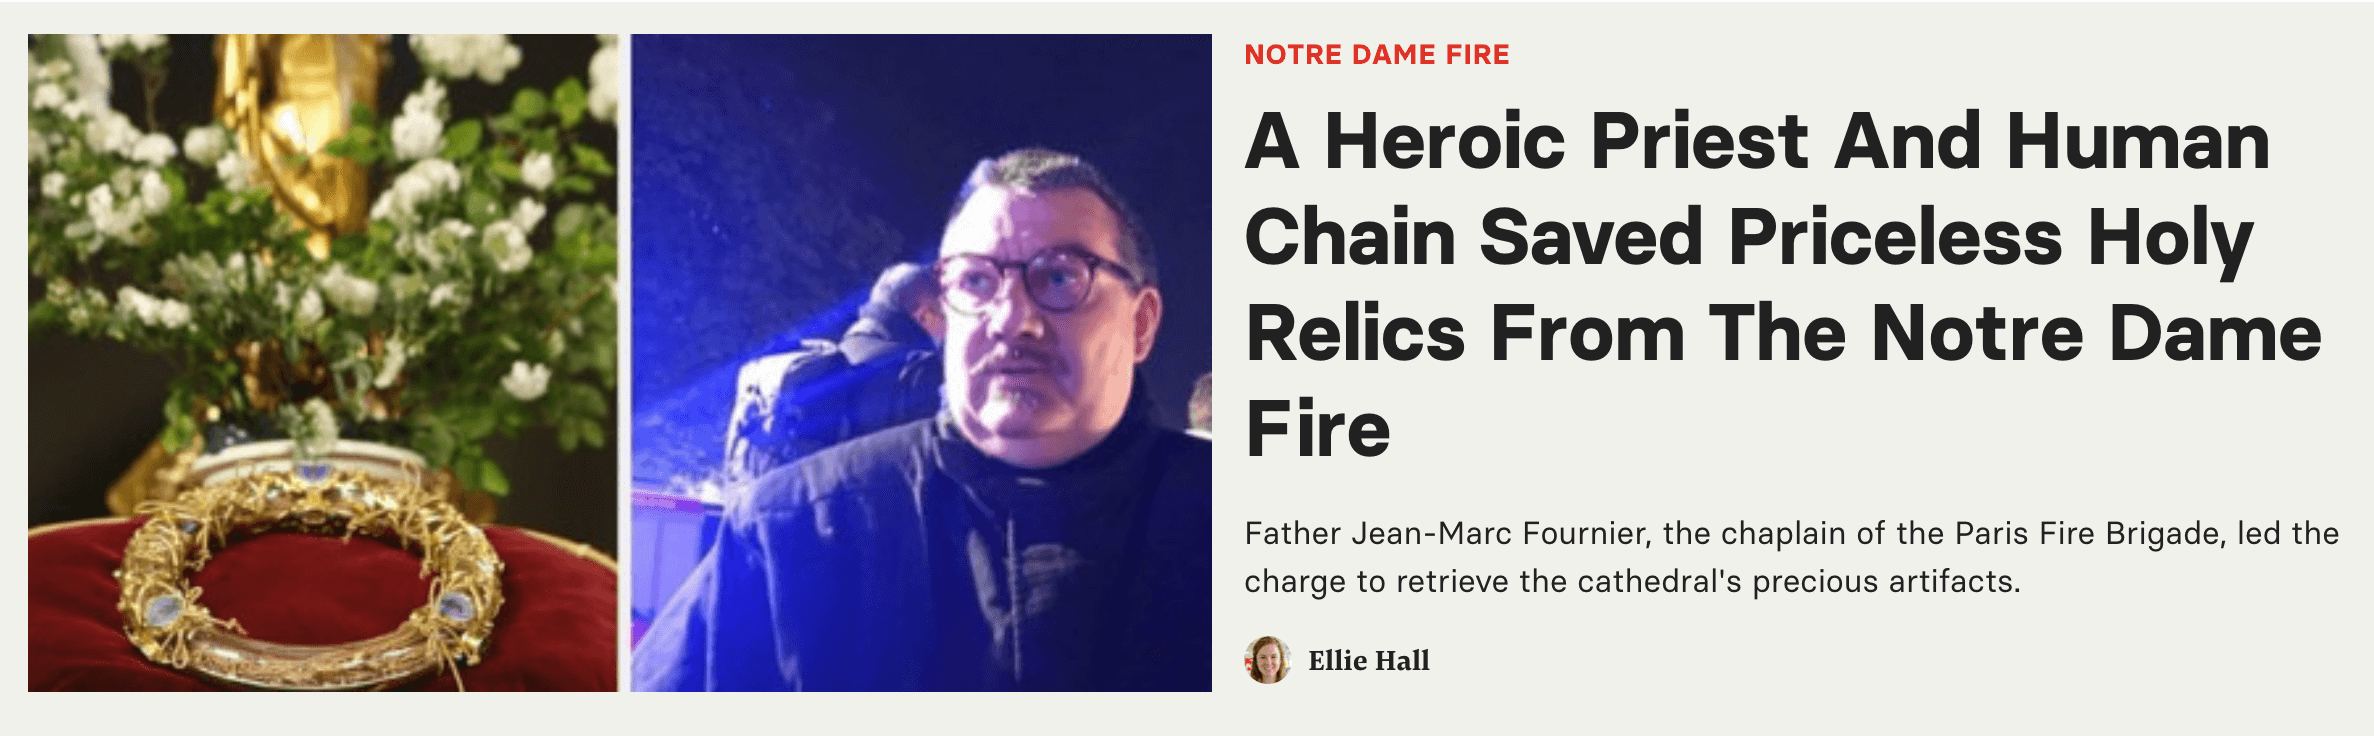 Un titre sur un prêtre qui a sauvé des reliques de l'incendie de Notre-Dame avec l'aide d'une chaîne humaine.